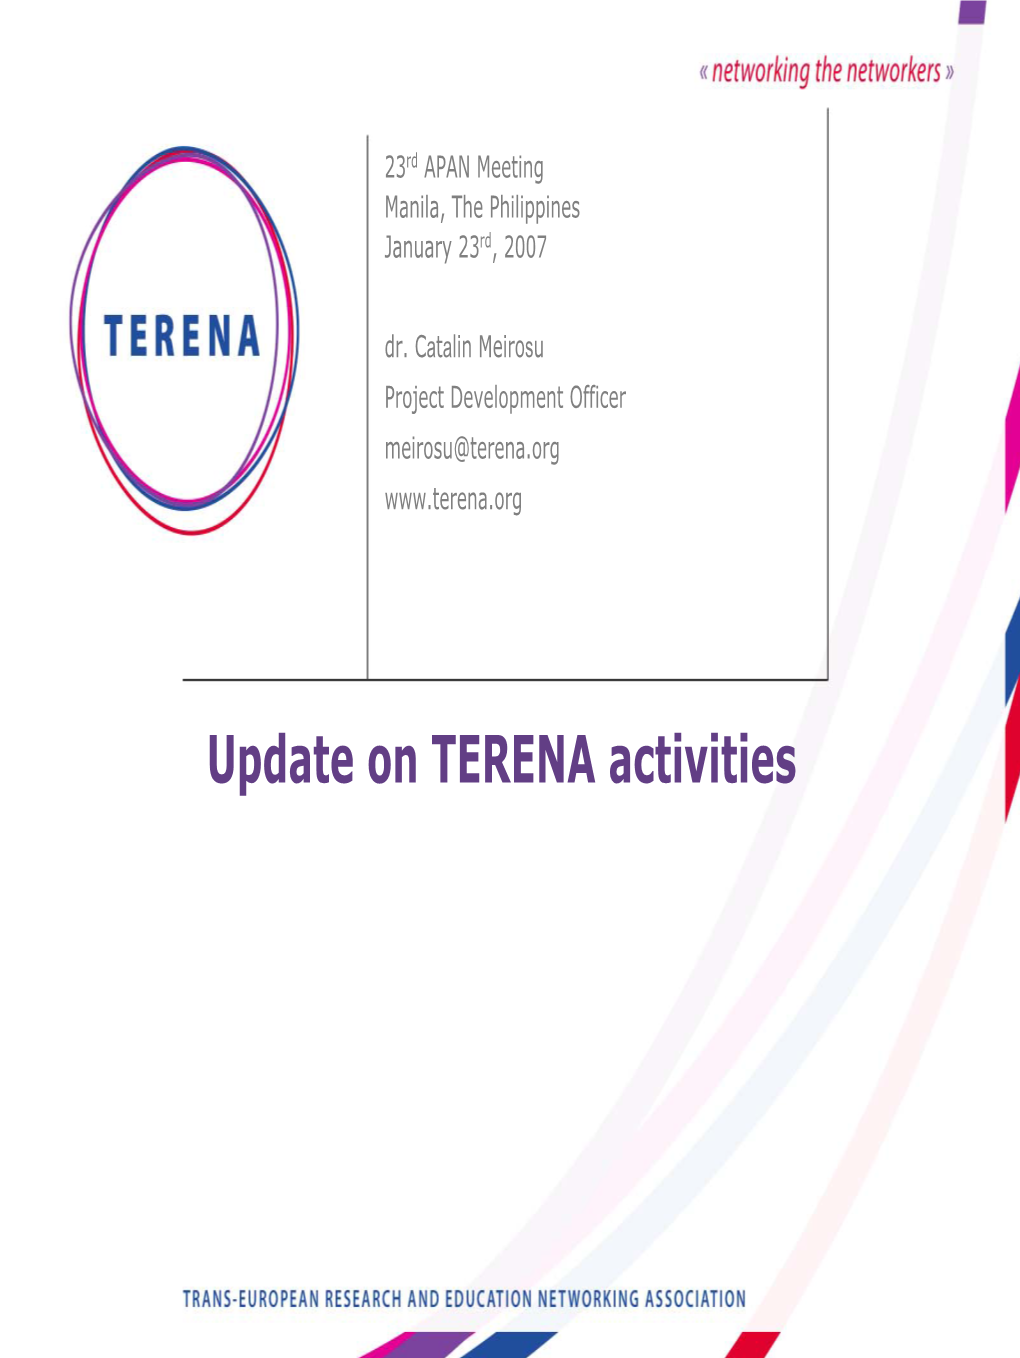 Update on TERENA Activities Outline